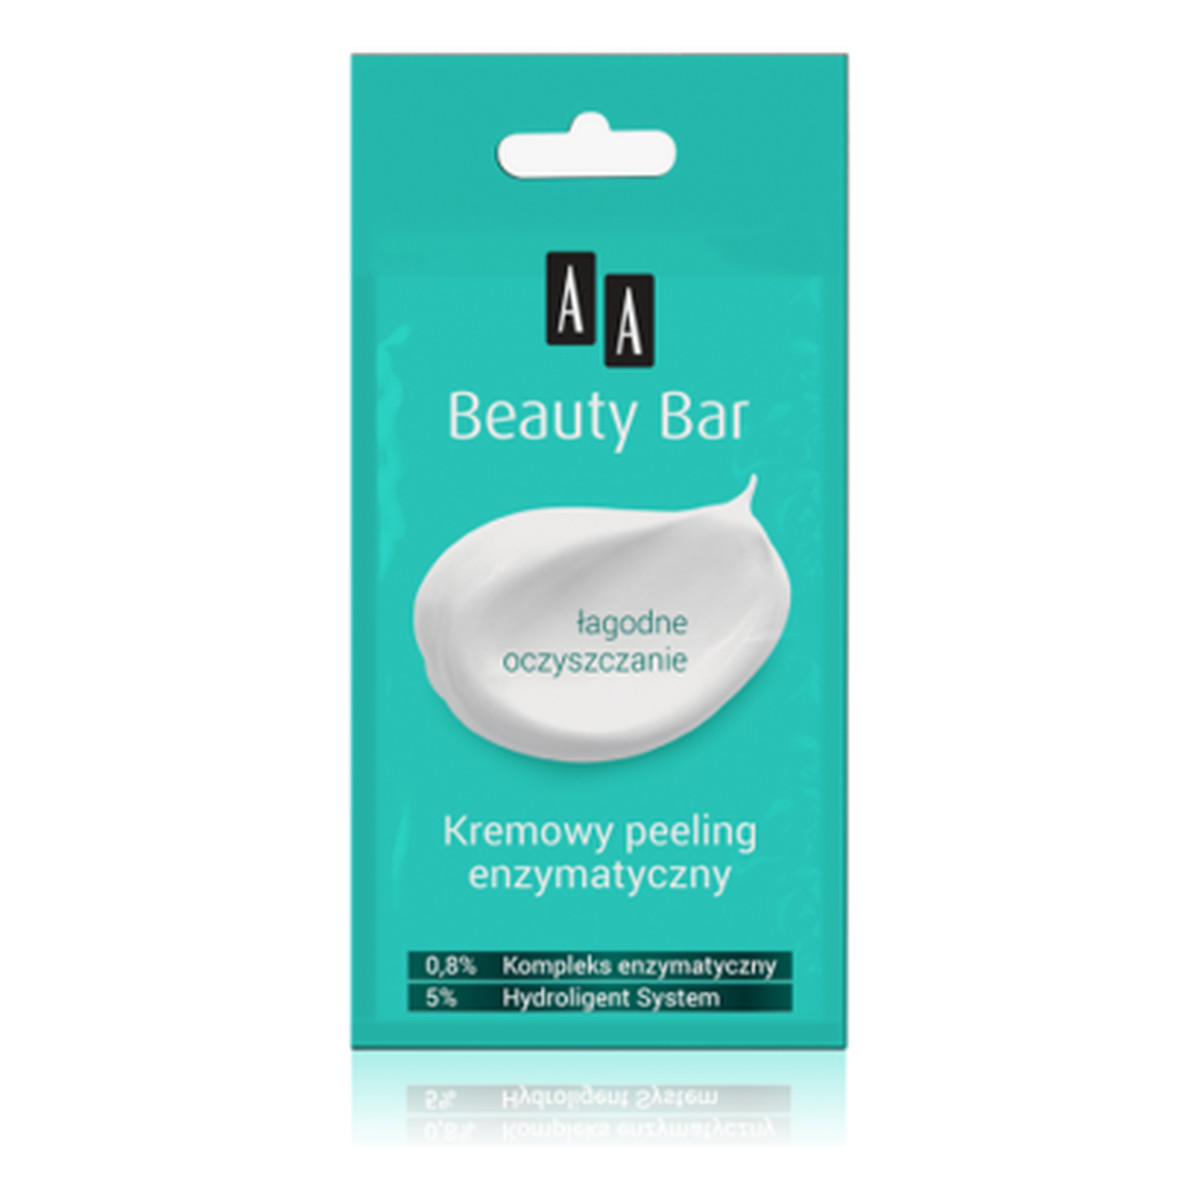 AA Beauty Bar Kremowy peeling enzymatyczny 8ml